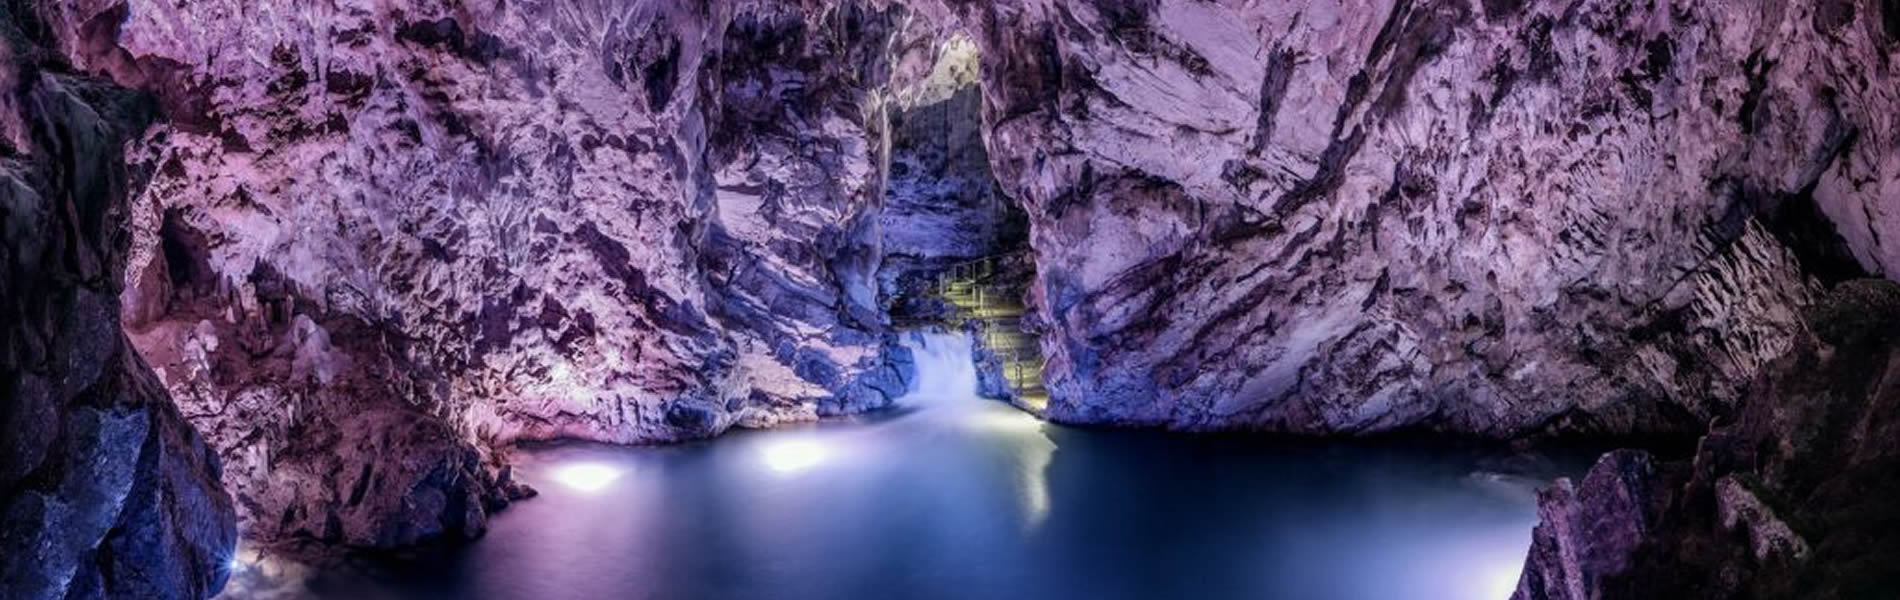 Petina- Grotte Pertosa